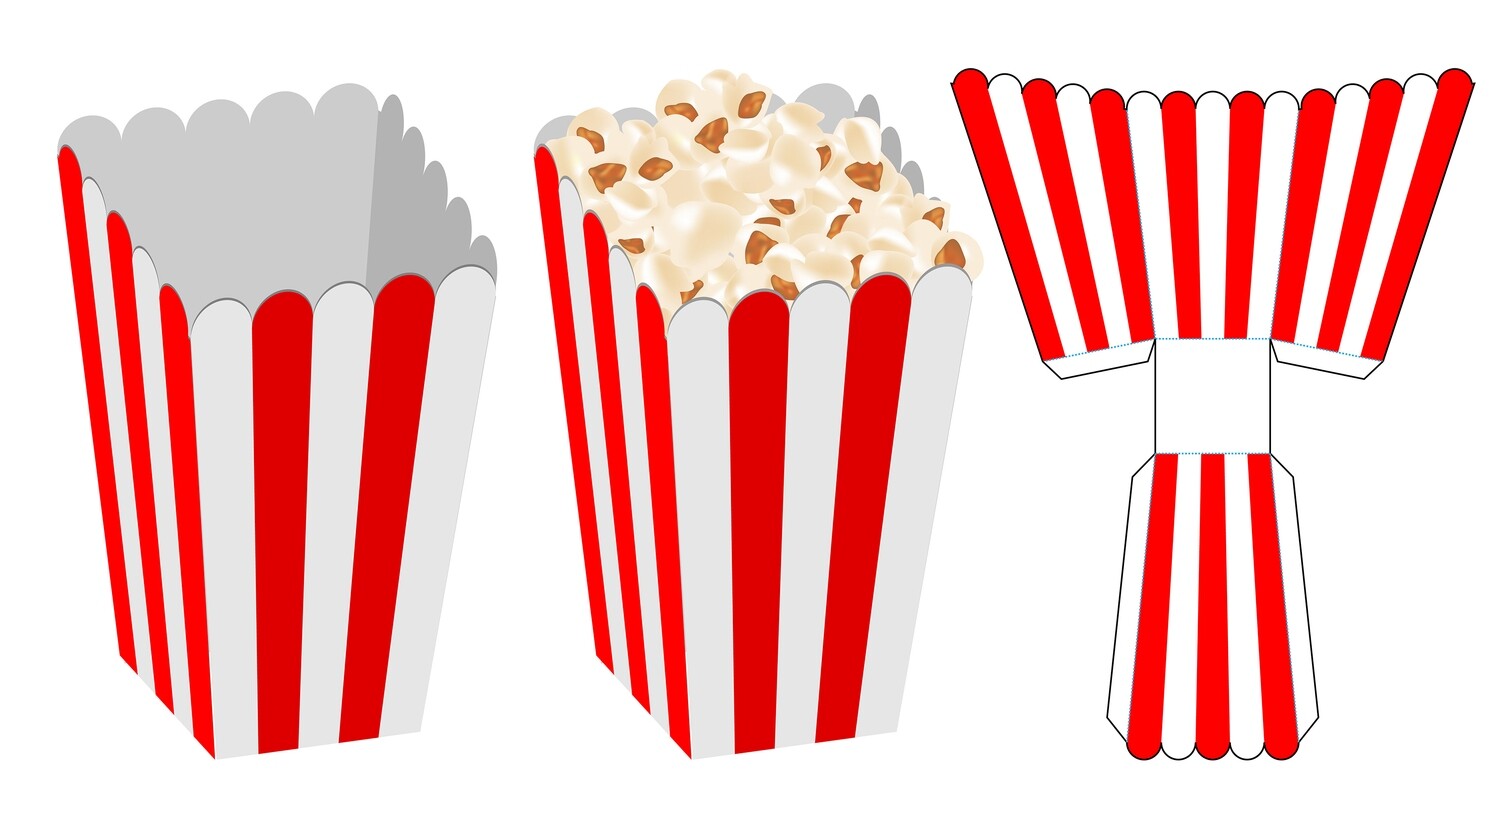 Popcorn Box Design Template